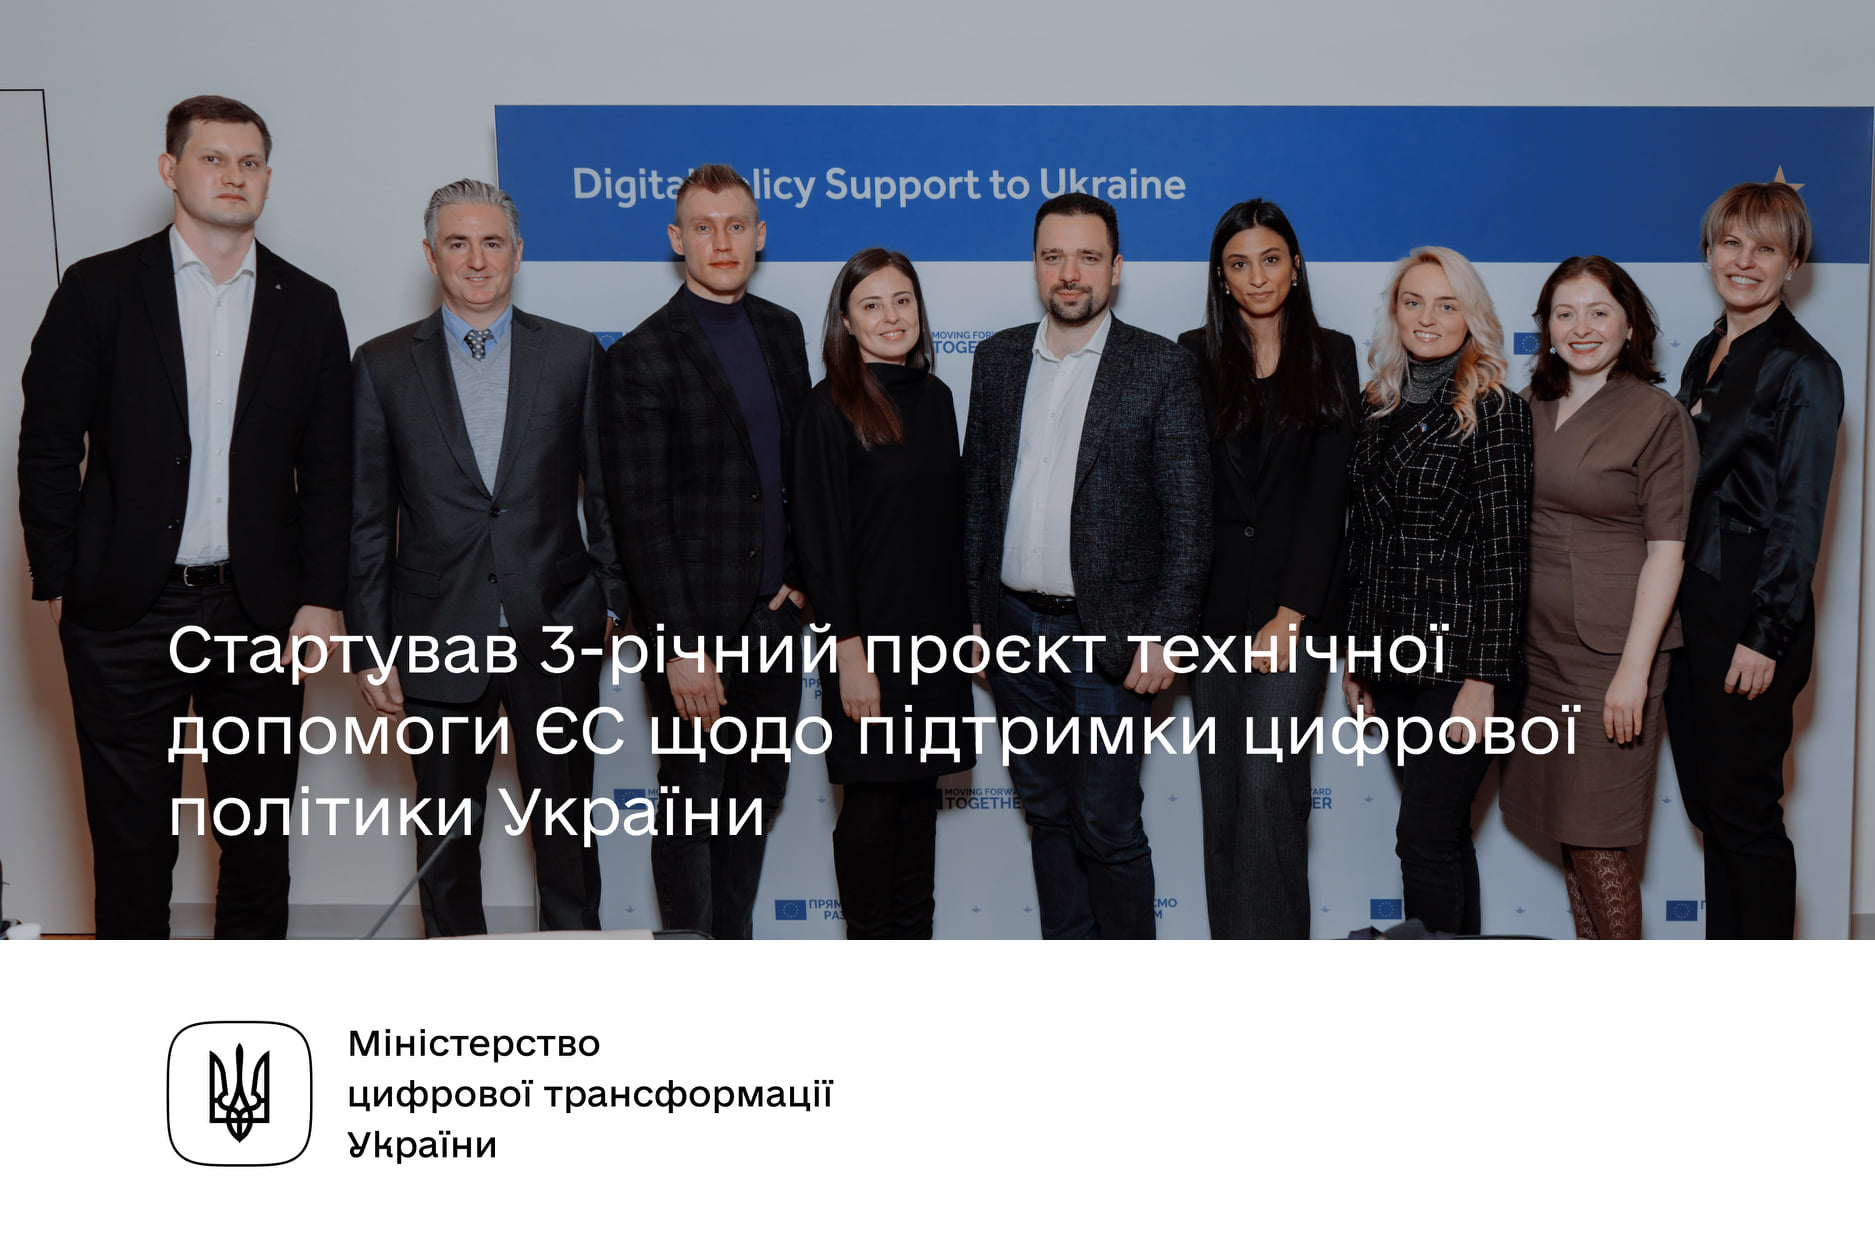 Розпочався 3-річний проєкт технічної допомоги ЄС щодо підтримки цифрової політики України